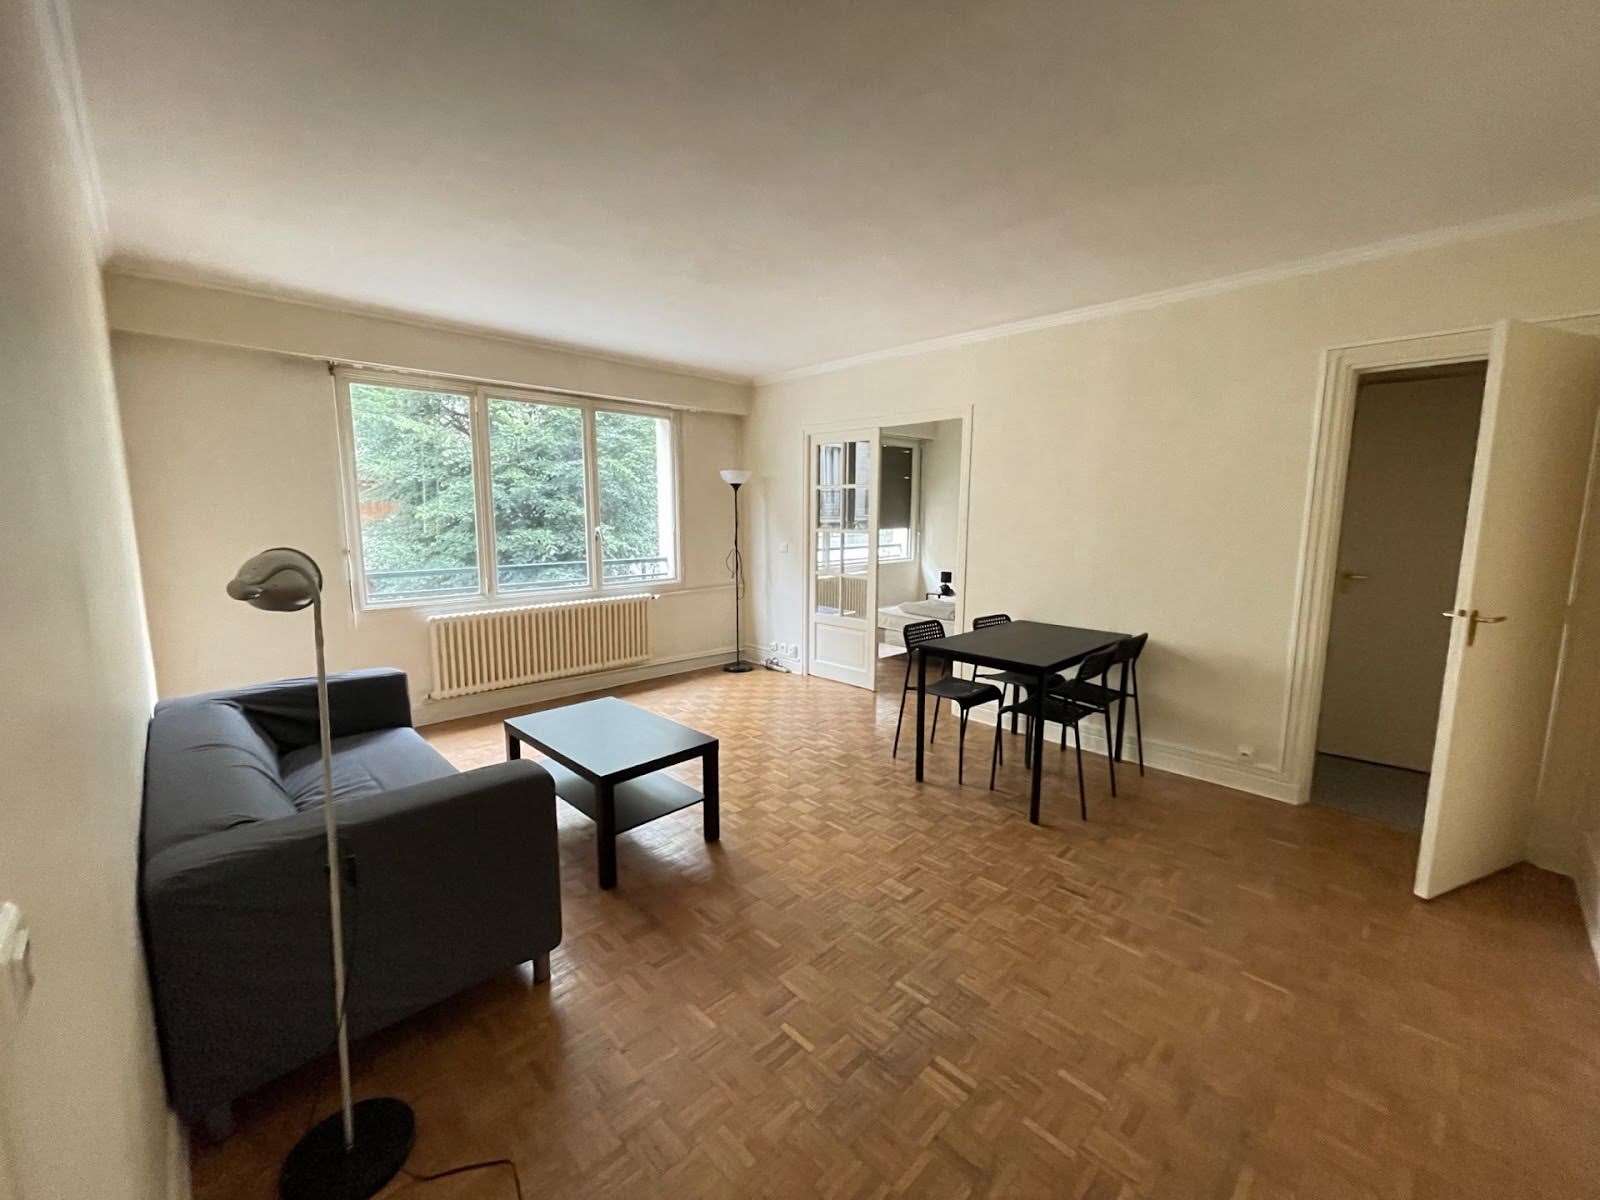 Location appartement meublé 2 pièces 49,41 m2